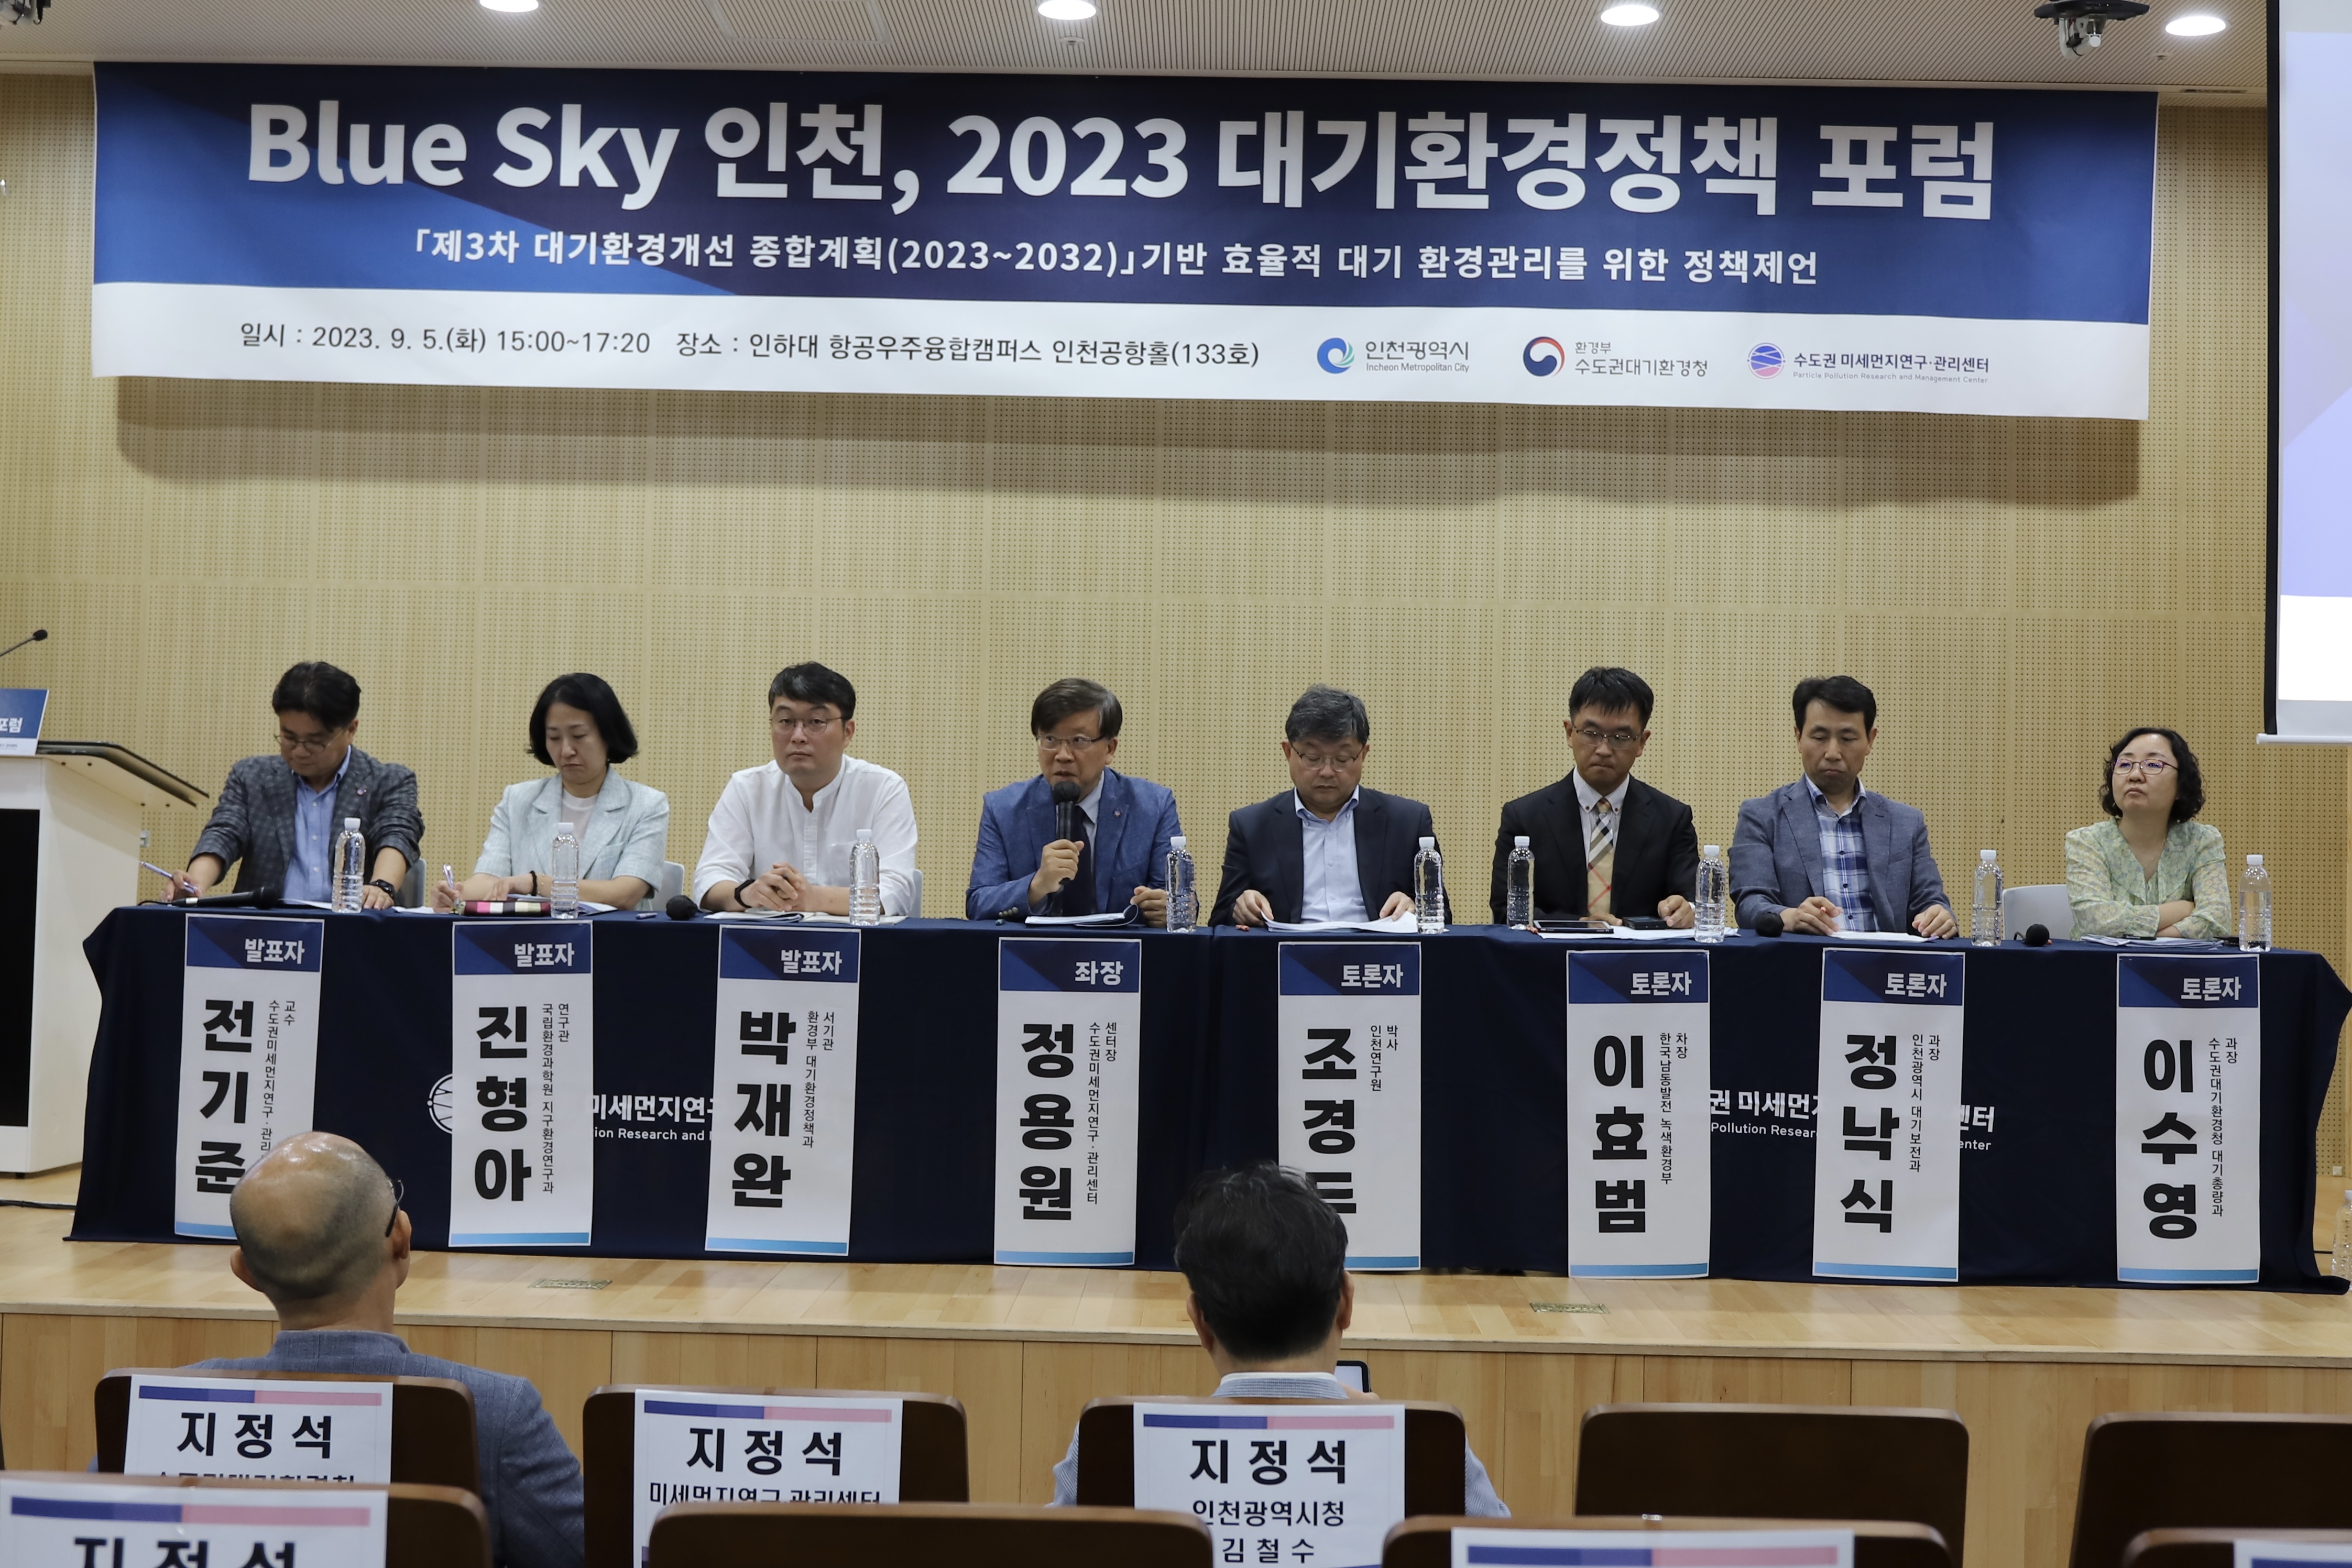 인천시와 수도권대기환경청, 푸른 하늘을 위한 ｢블루 스카이 인천, 2023 대기환경정책 포럼｣ 공동 개최 관련 이미지